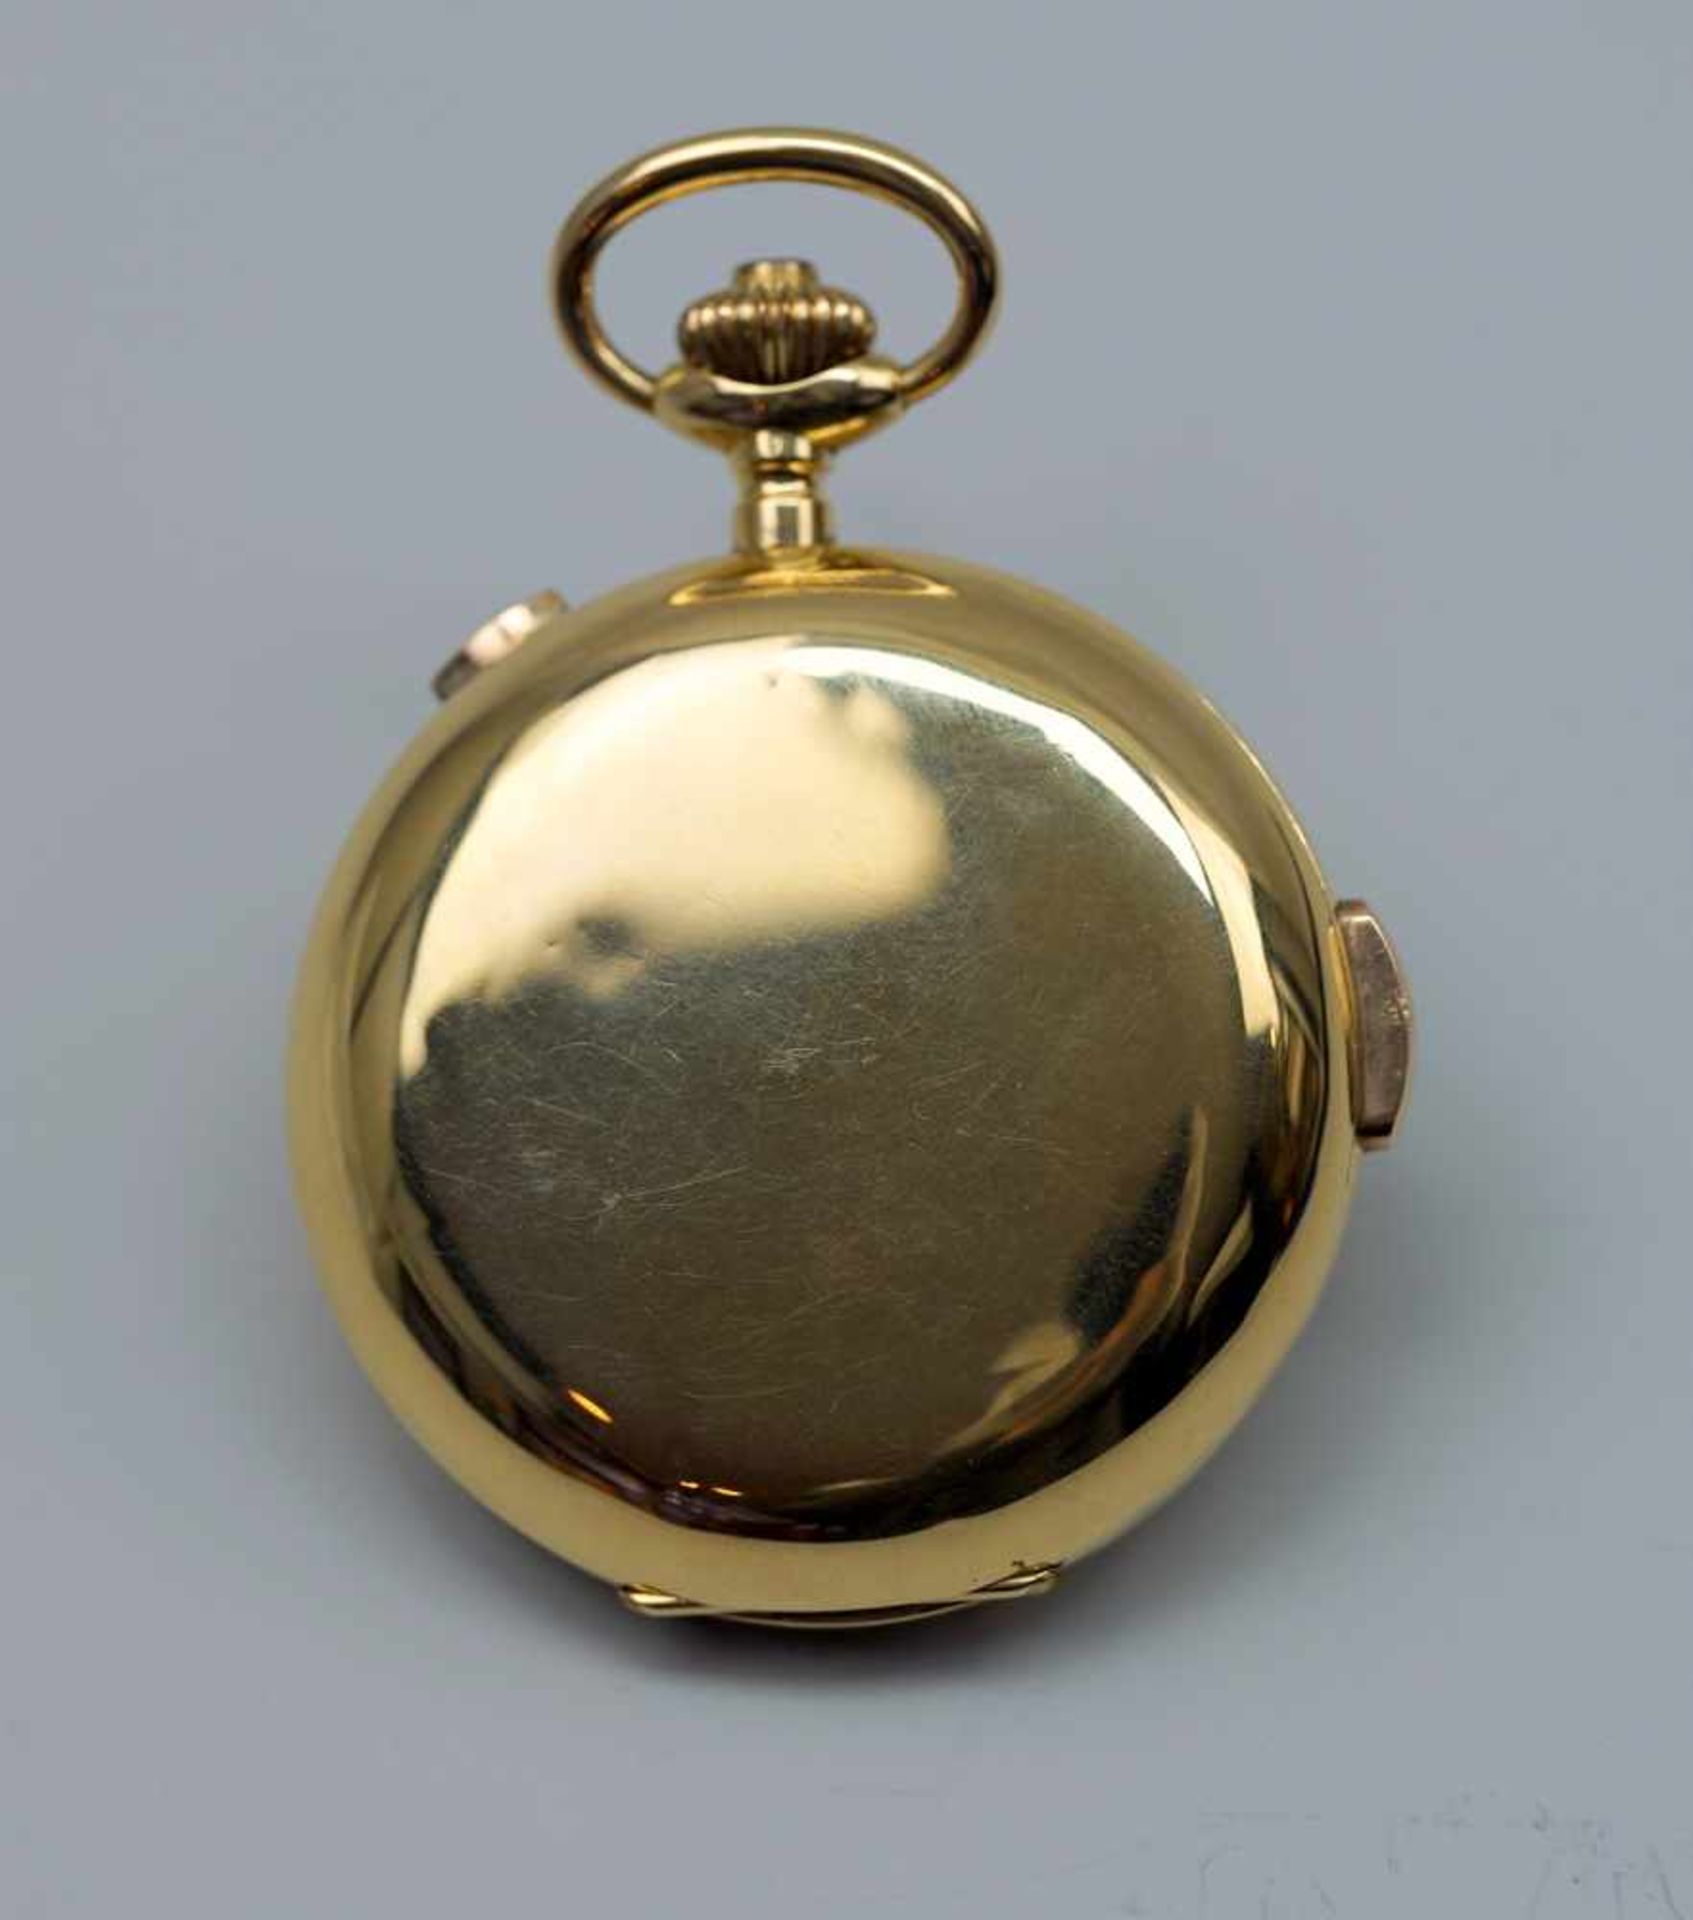 Große TaschenuhrGold. Große Taschenuhr mit drei Deckeln, Gold. Mit Mondphase, Tag sowie Datum und - Bild 2 aus 4